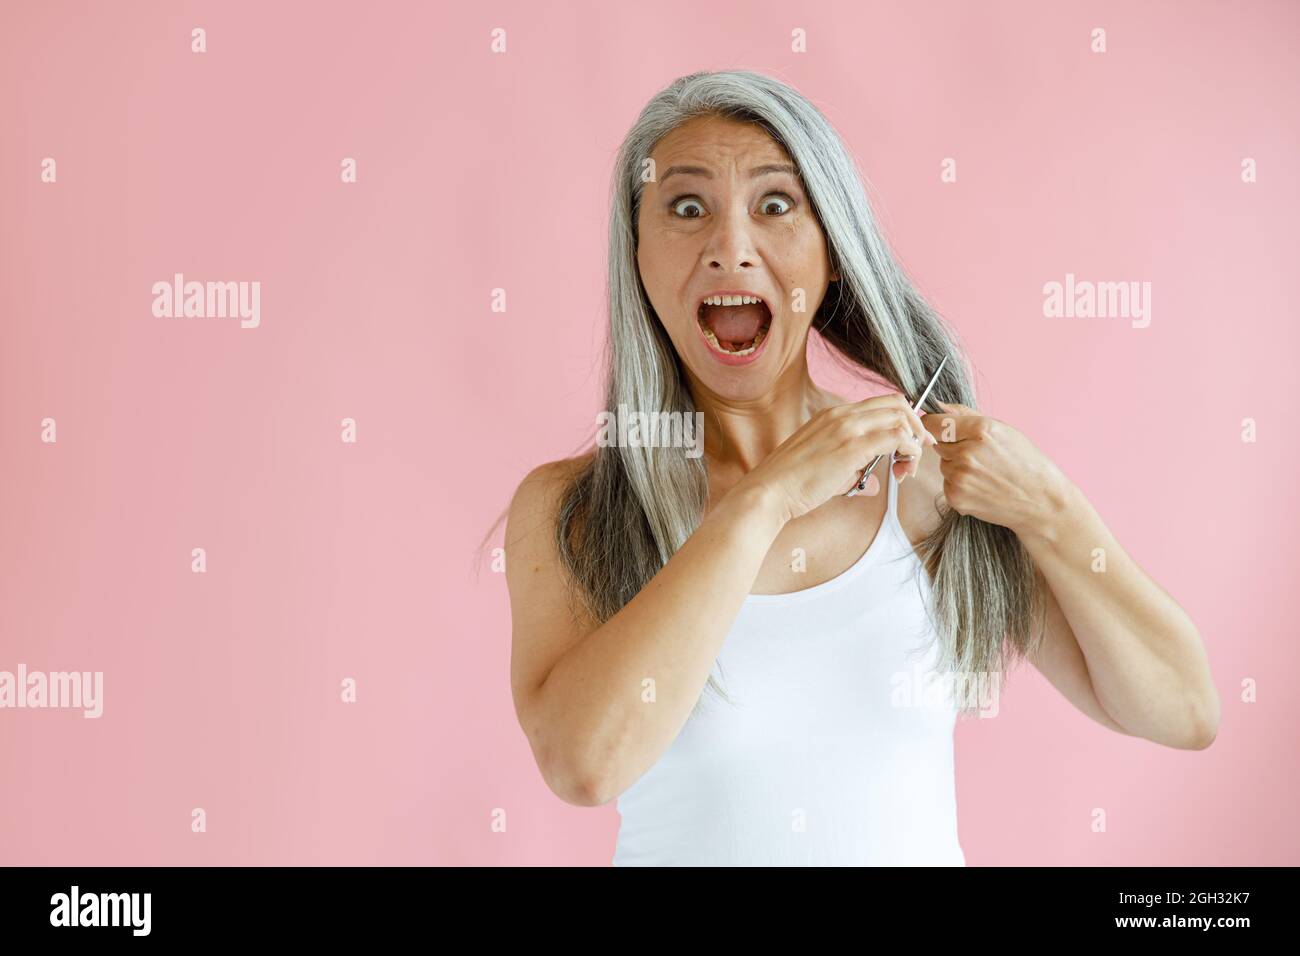 Aufgeregt mittleren Alters asiatische Frau schneidet lange silberne Haare mit scharfen Scheren auf rosa Hintergrund Stockfoto